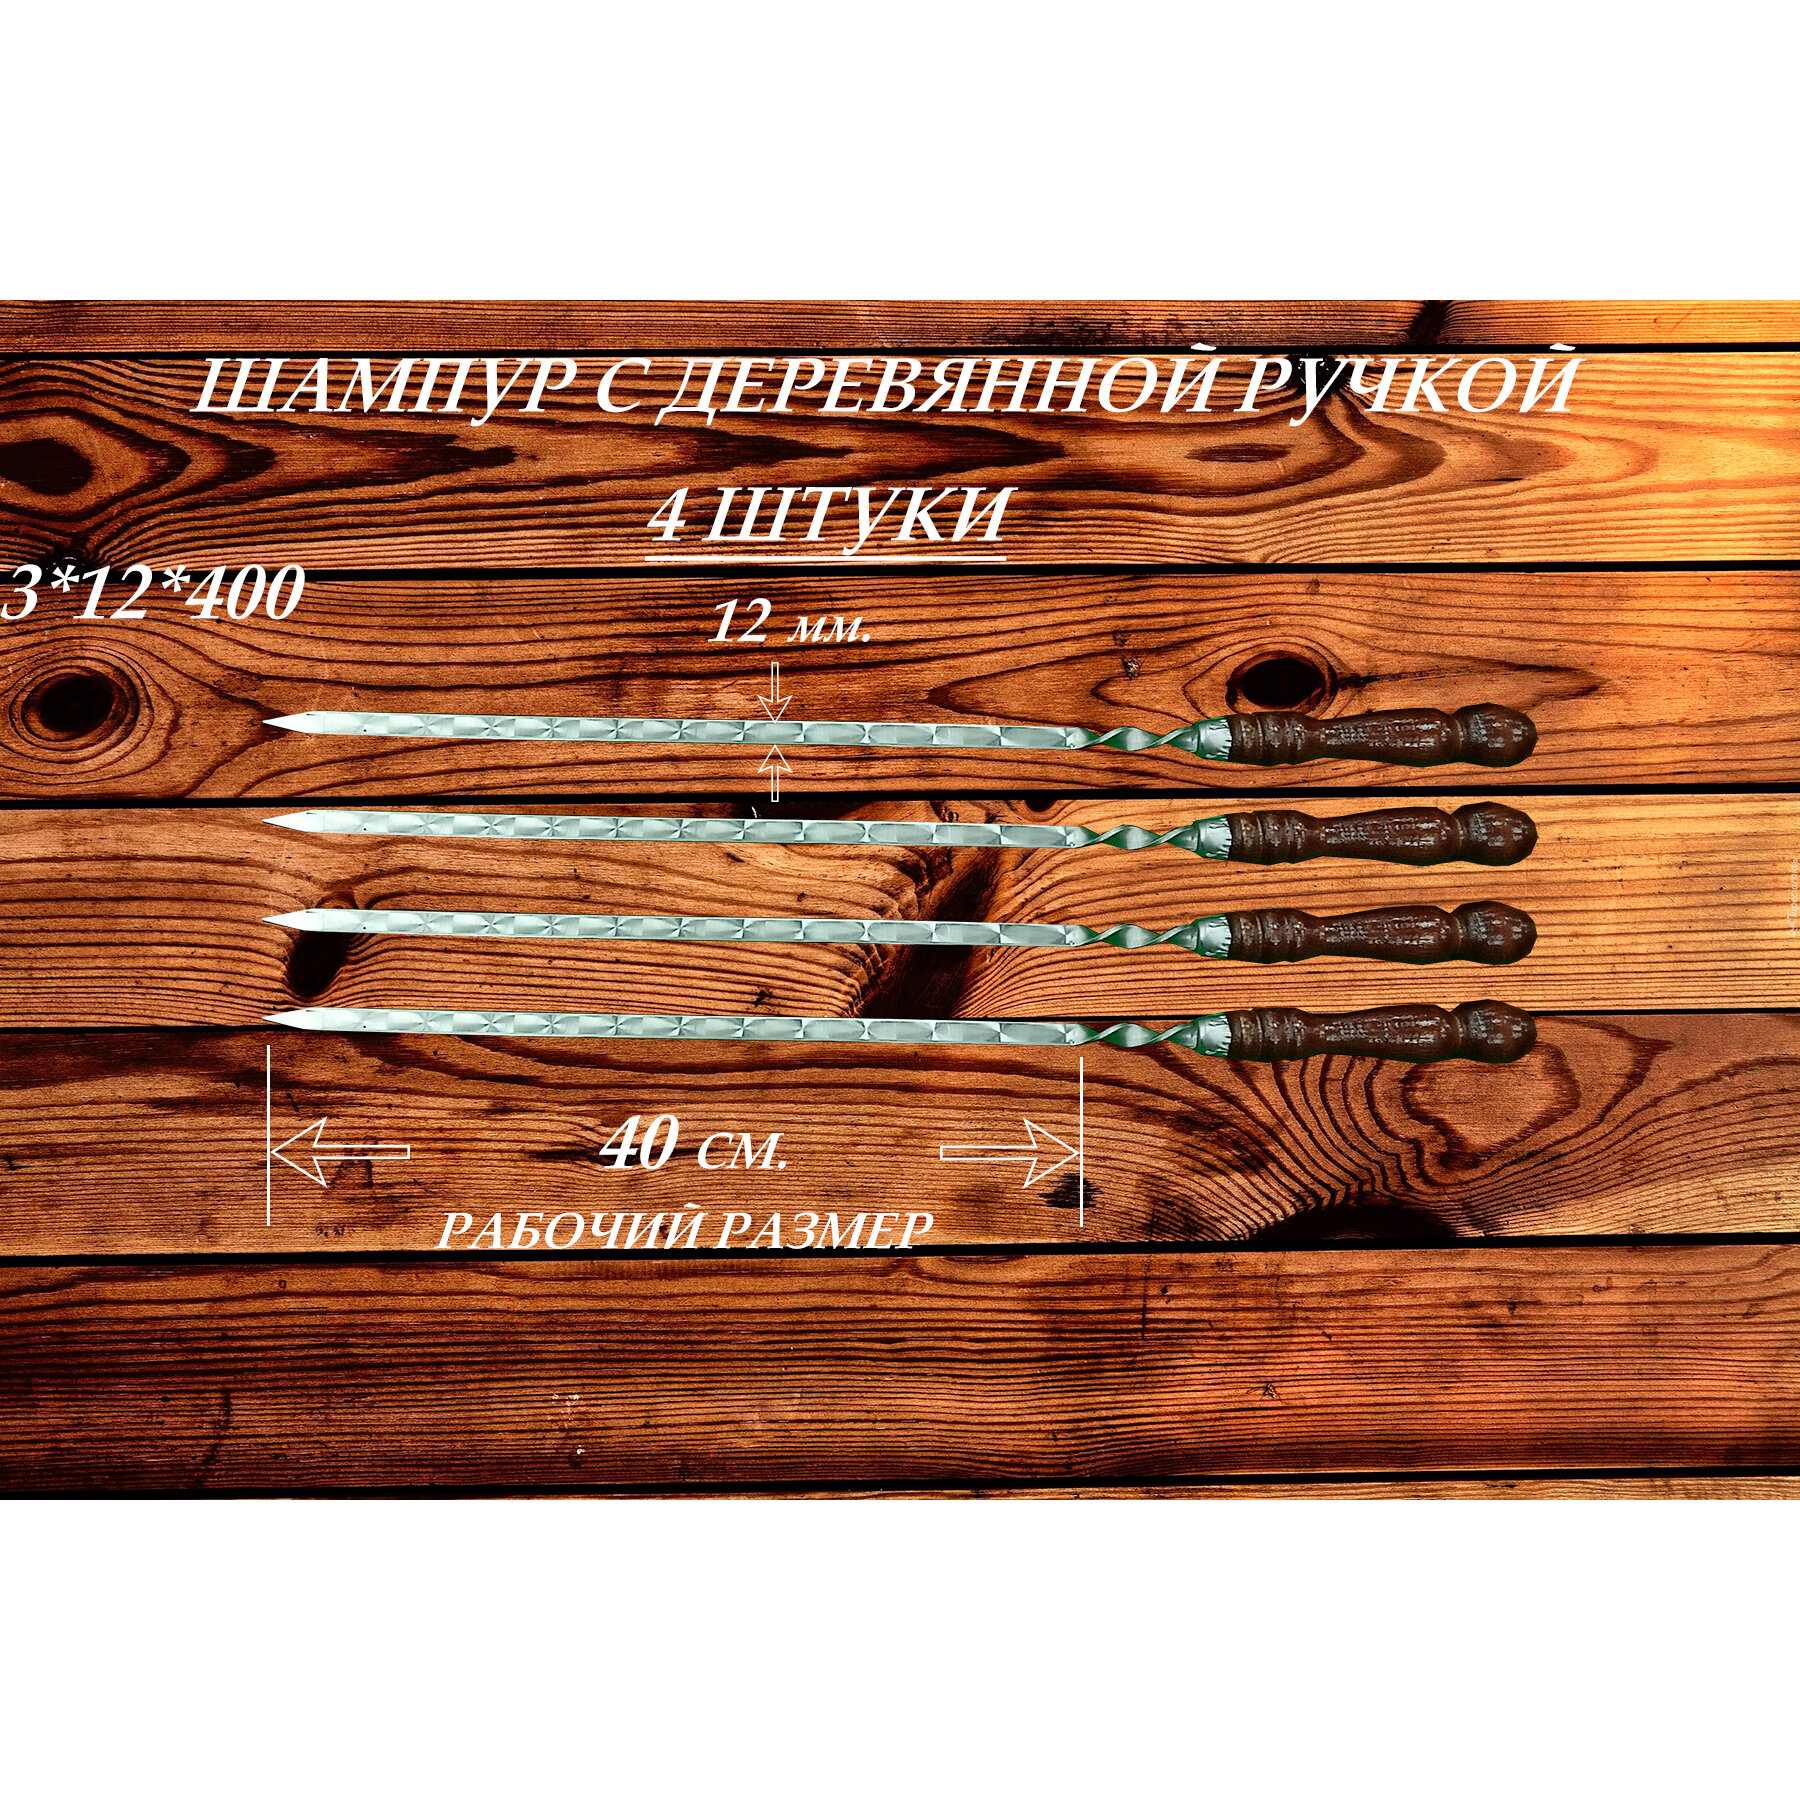 Набор шампуров из нержавеющей стали (4 шт.) с деревянной ручкой "РЗ" 3х12х400 (630) мм